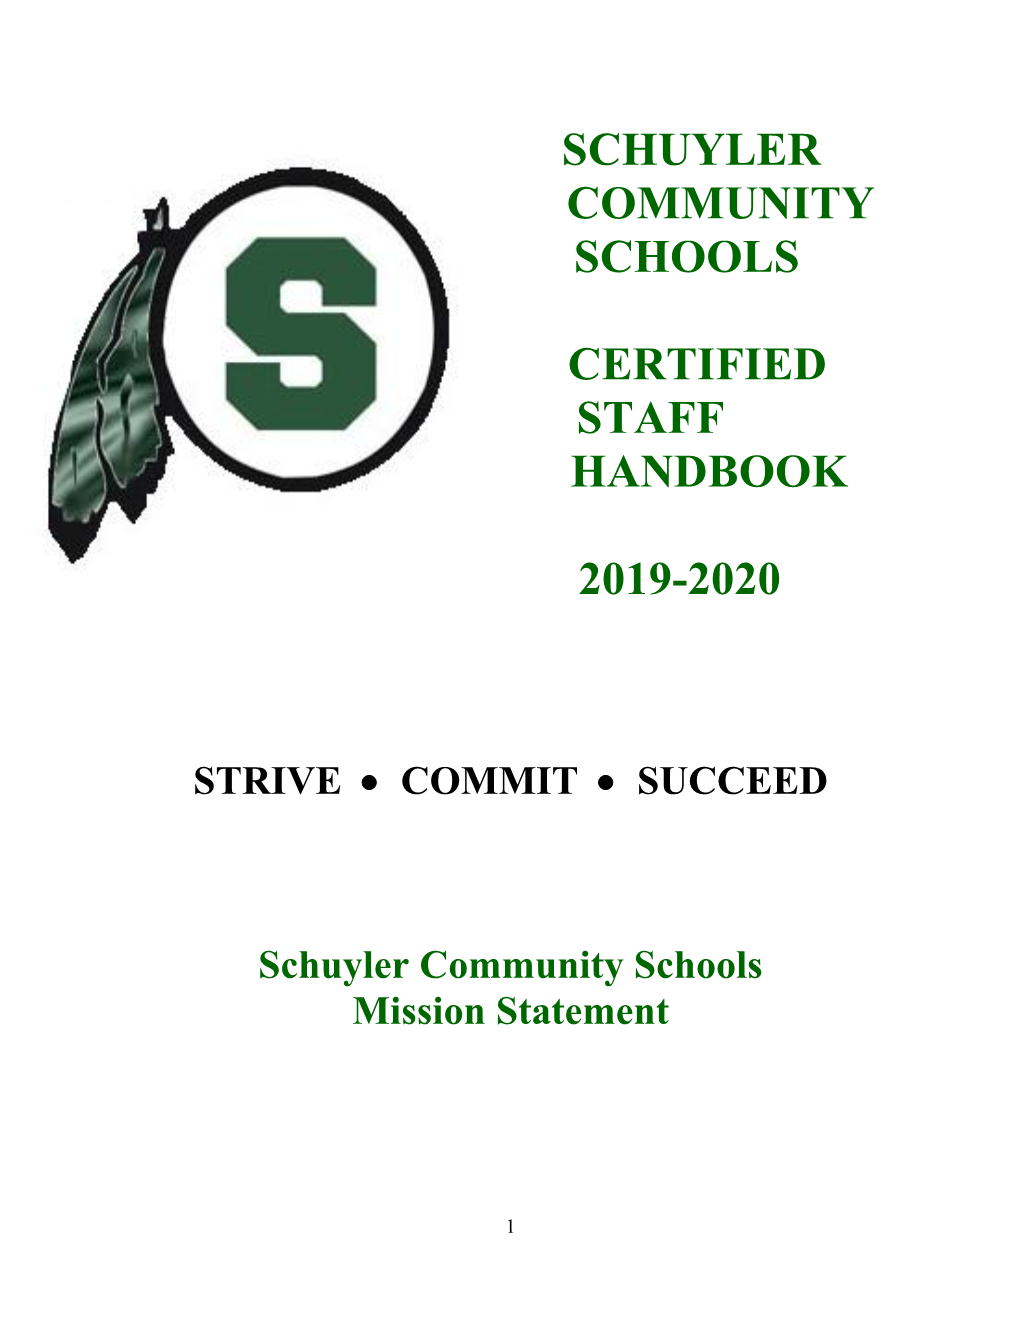 Schuyler Community Schools Certified Staff Handbook